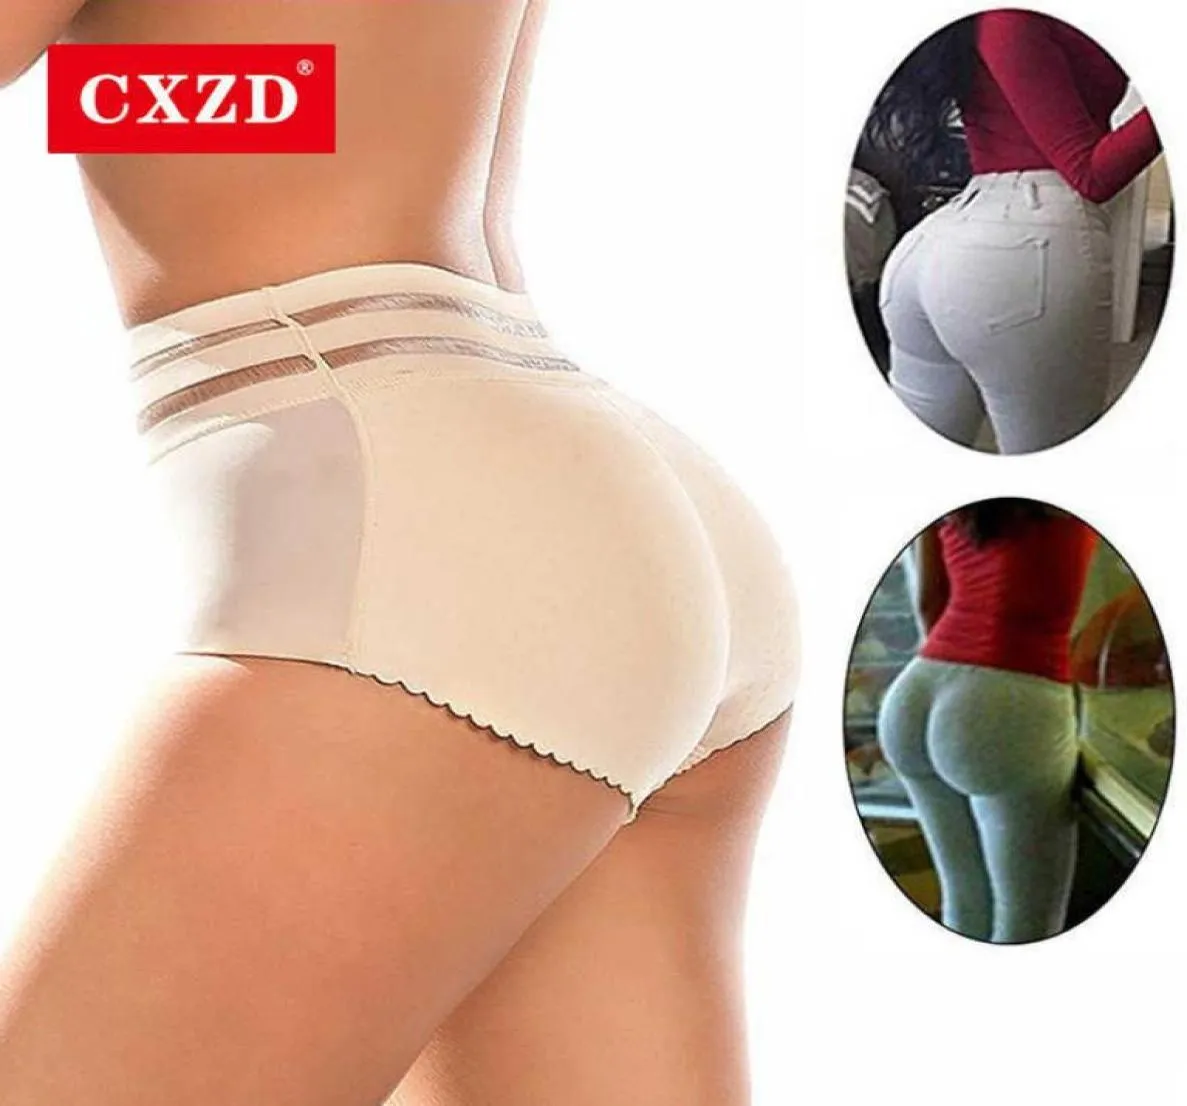 CXZD Femmes et Hip Enhancer Booty Pantes rembourrées Body Shaper Shaper Butt Butter Panty Boyshorts Shapewear7443836